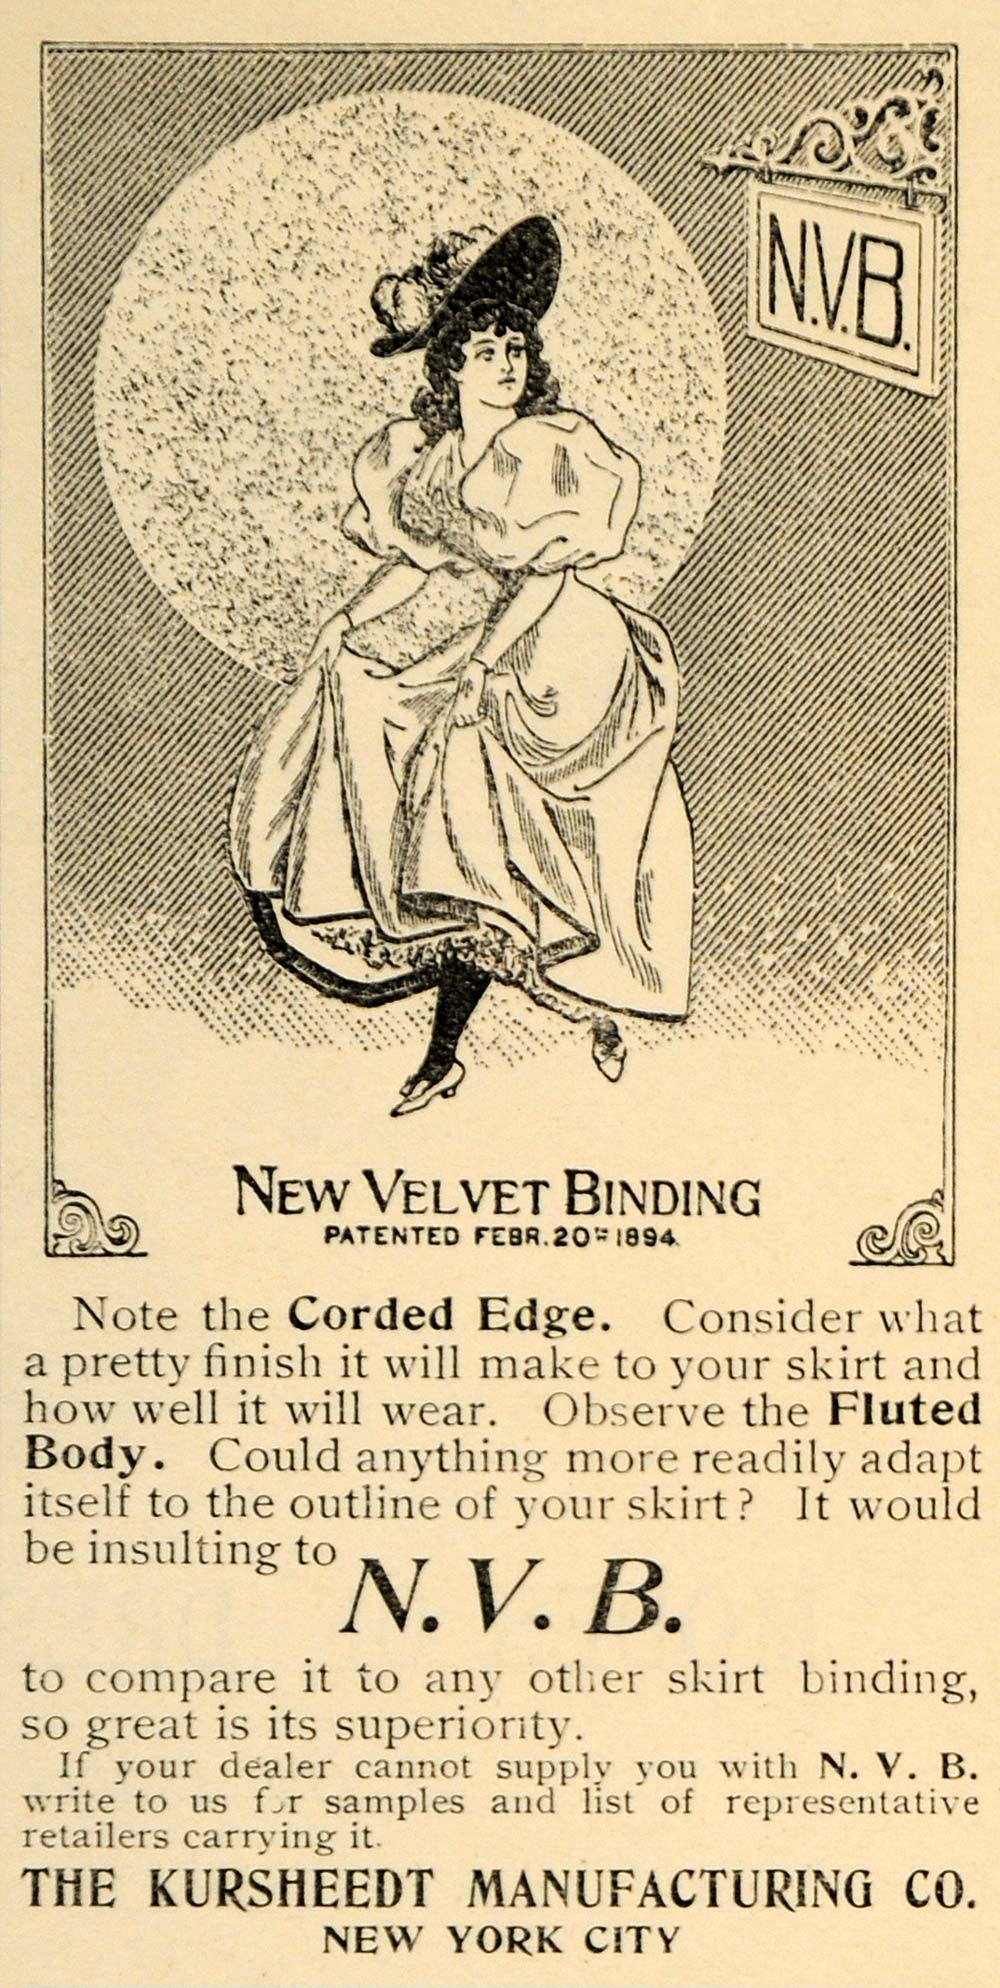 1896 Ad Kursheedt New Velvet Binding Skirt Clothing - ORIGINAL ADVERTISING LHJ4